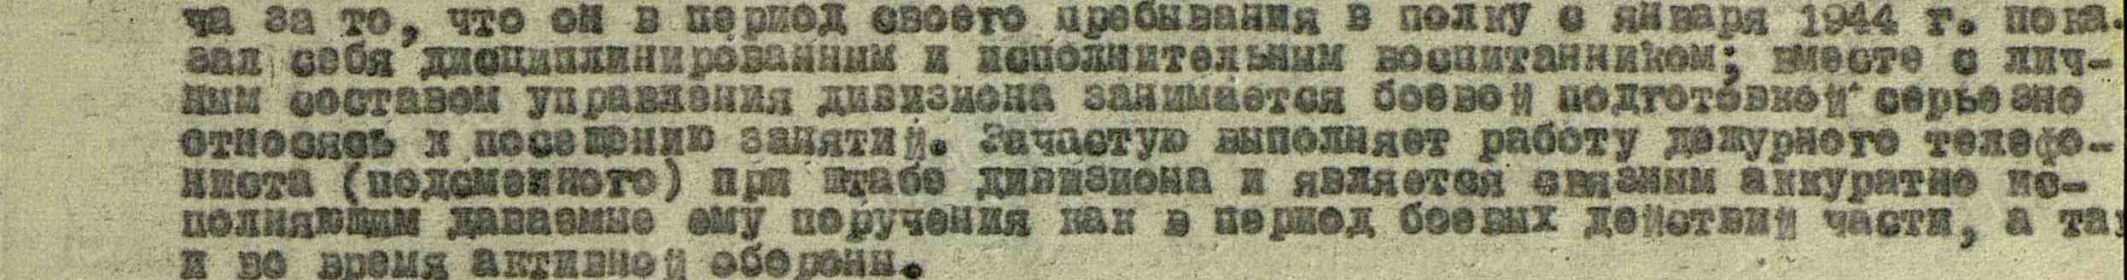 Приказ о награждении № 05/н от 01 мая 1945 г.